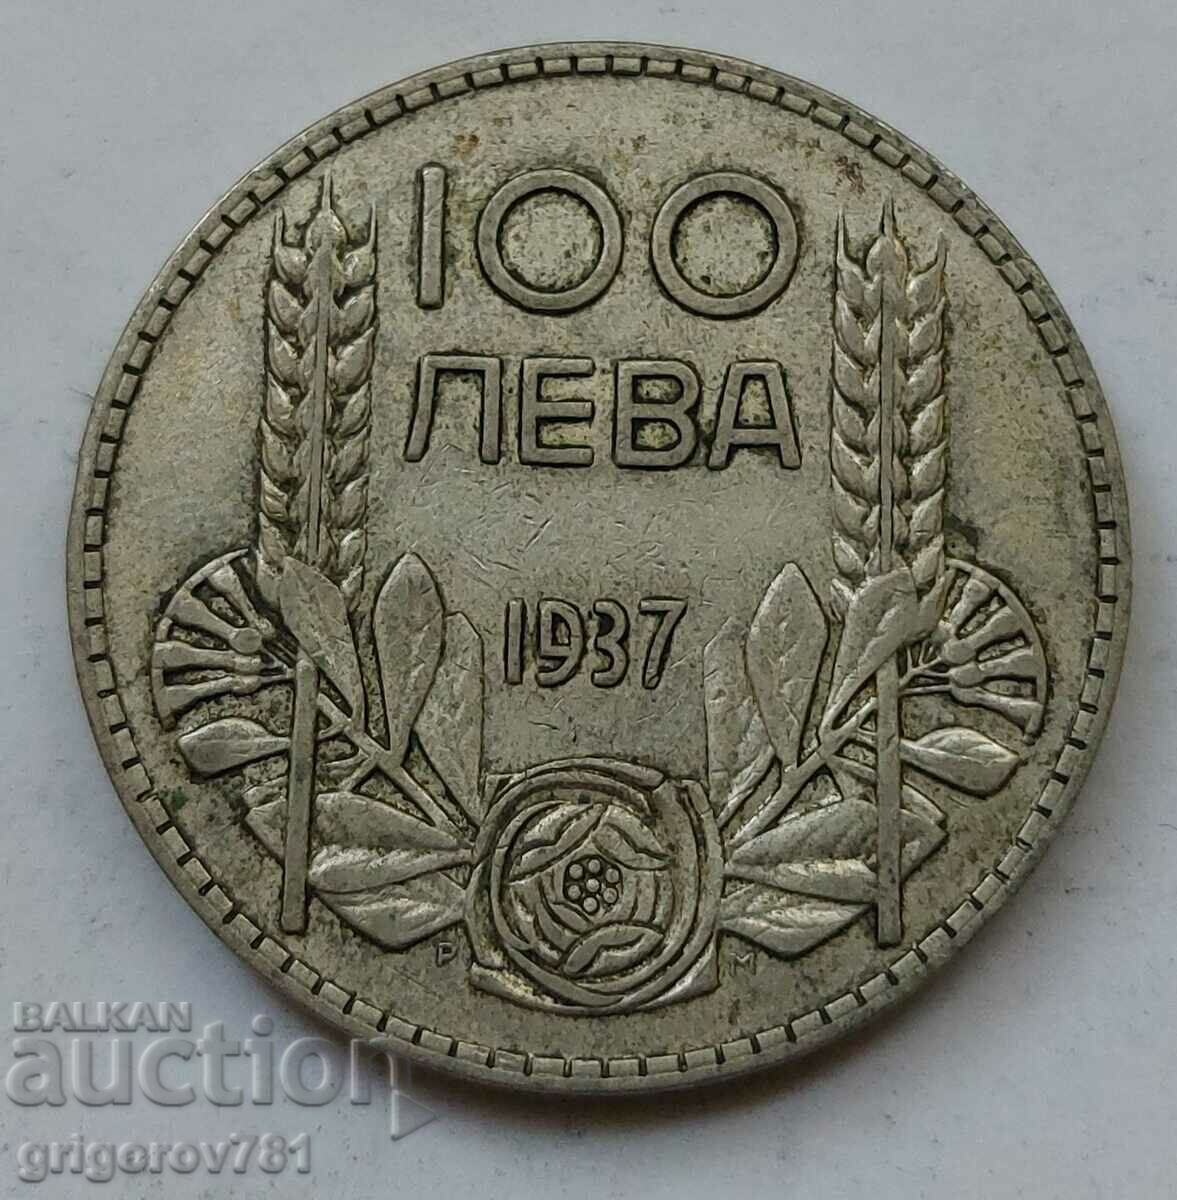 Ασήμι 100 λέβα Βουλγαρία 1937 - ασημένιο νόμισμα #80